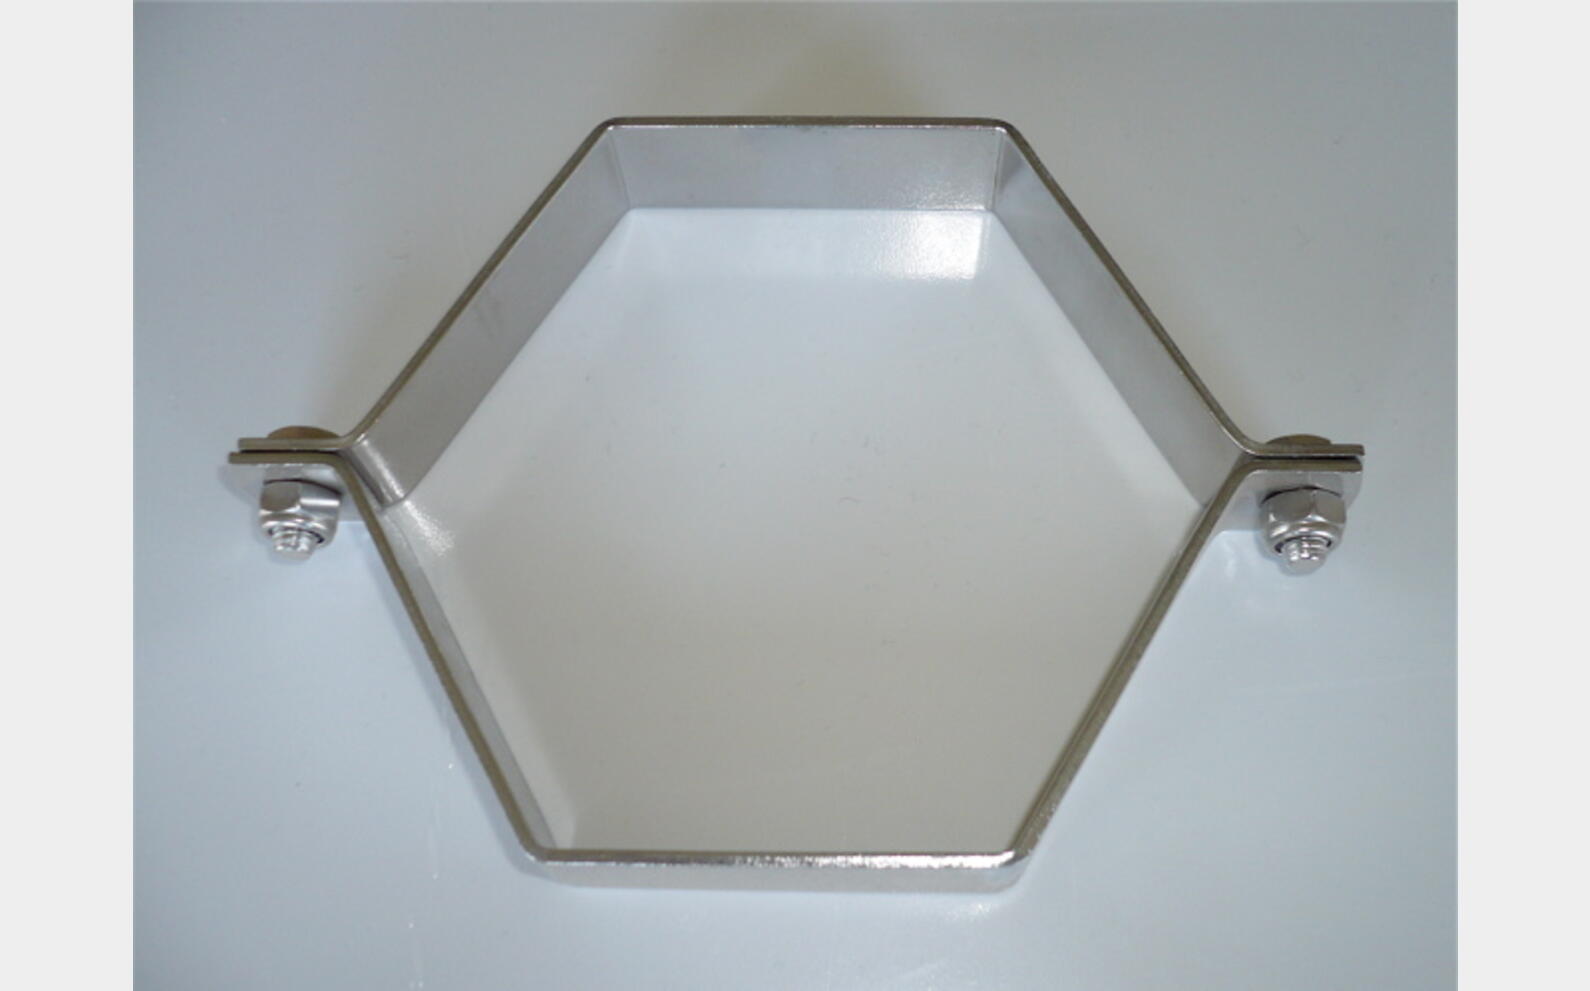 Hexagonal necklace - Stainless steel tube holder